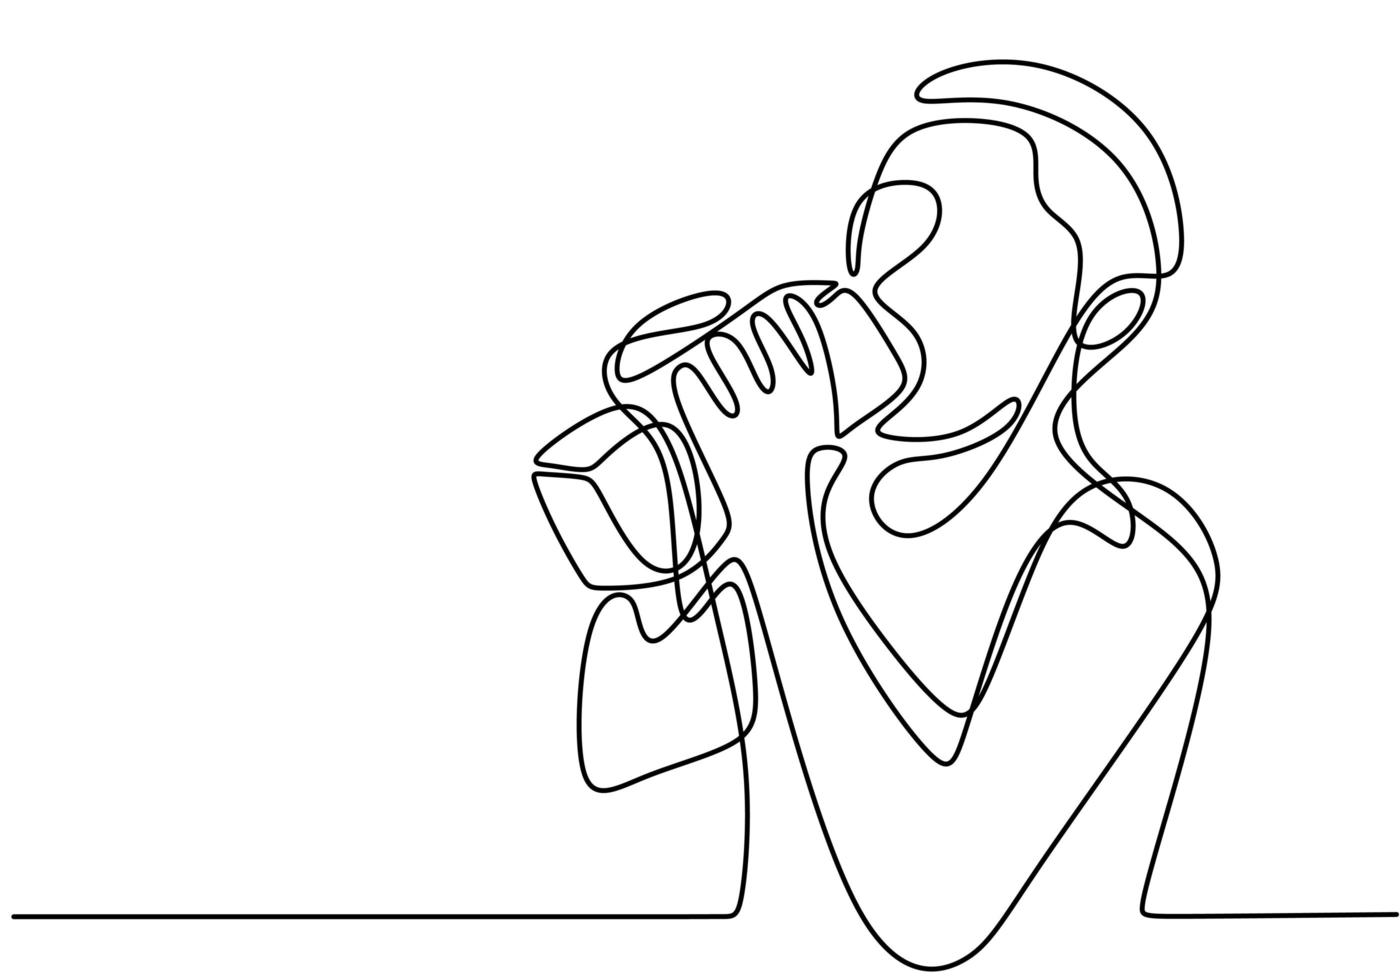 disegno continuo di una linea, vettore di persona che beve acqua o latte. design minimalista con semplicità disegnato a mano isolato su sfondo bianco.